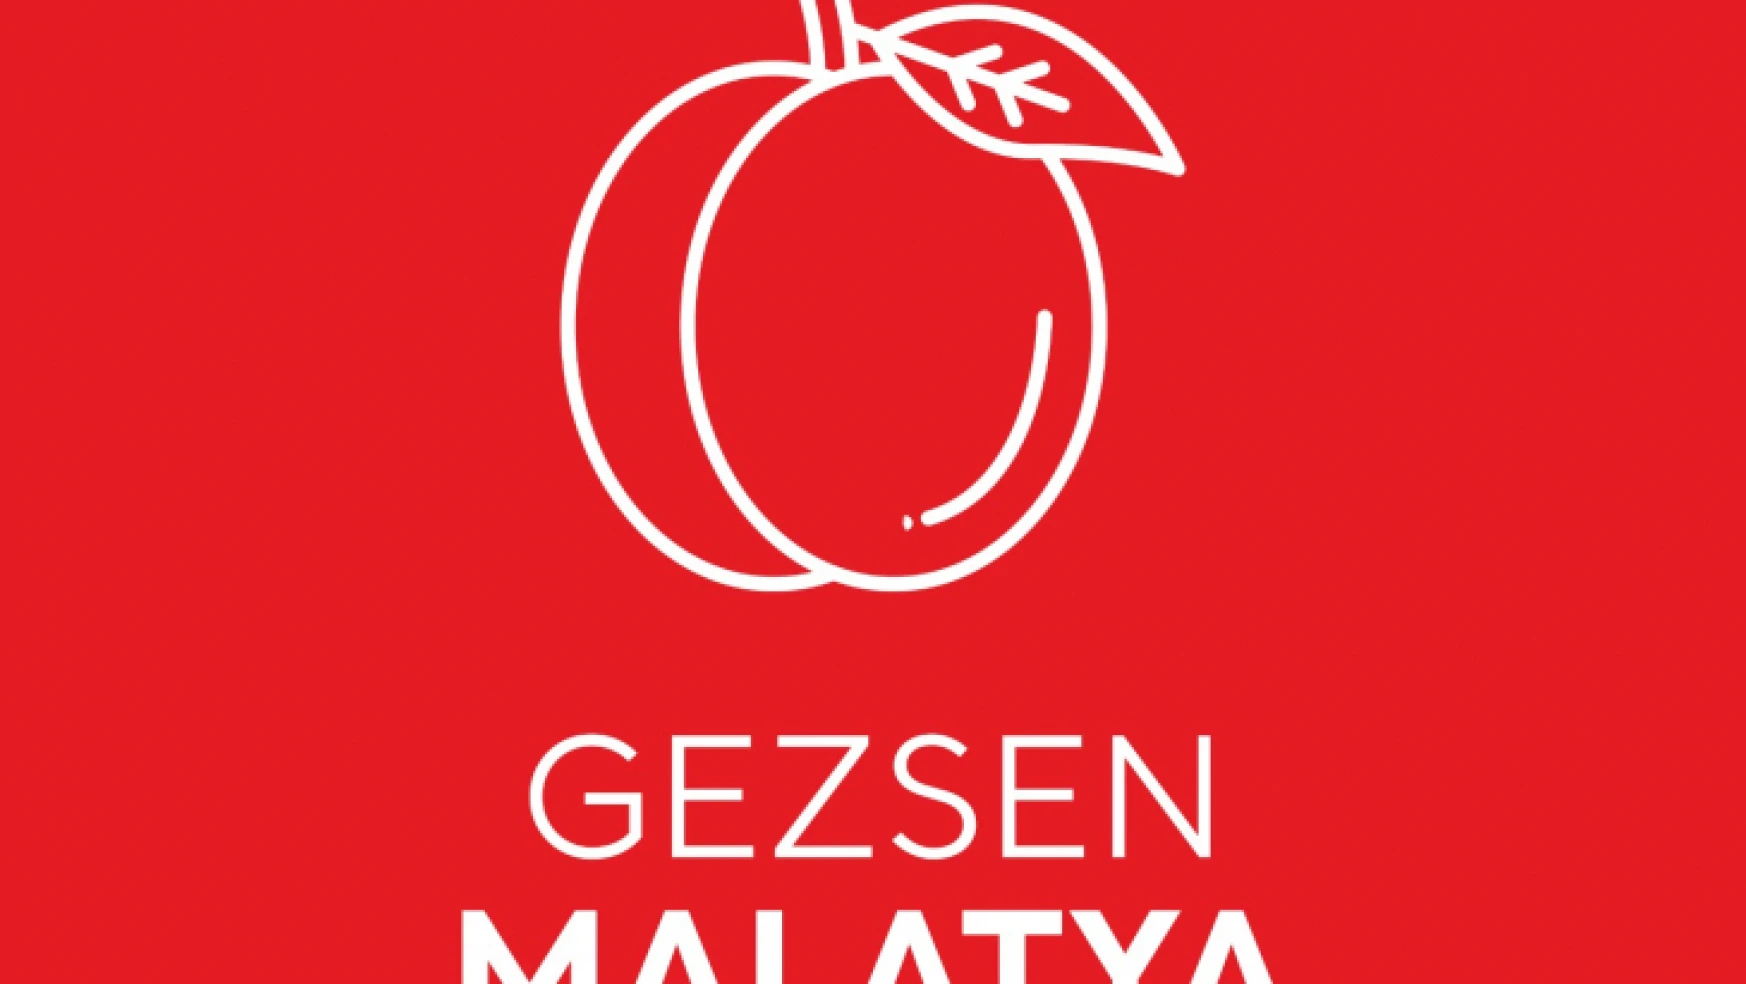 Malatya'nın Tanıtım Yüzü 'Gezsen Malatya' Yayında